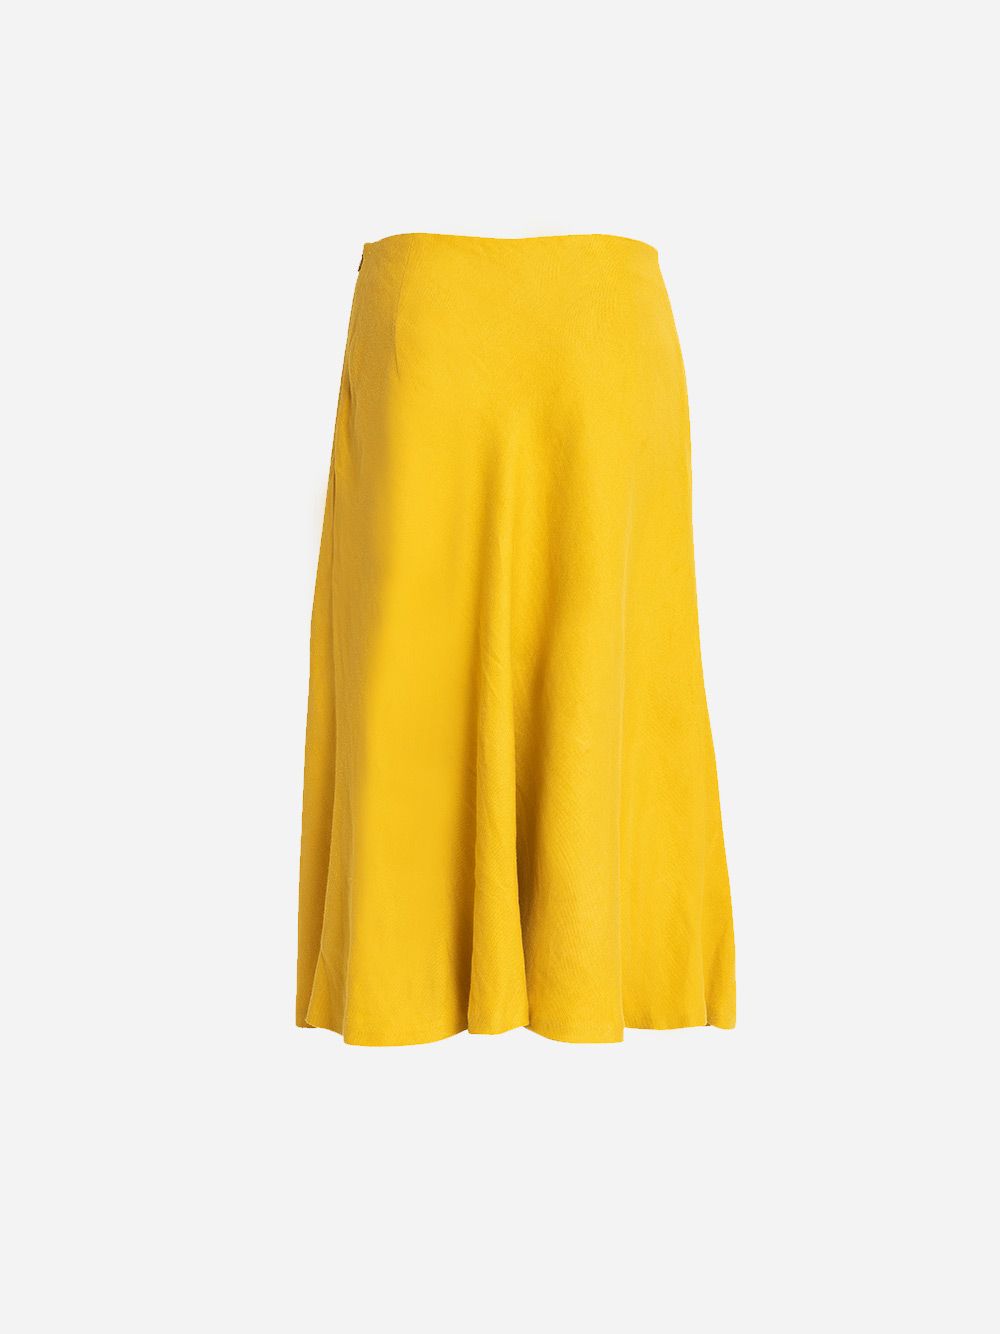 Yellow Girassol Skirt | Carolina Machado 